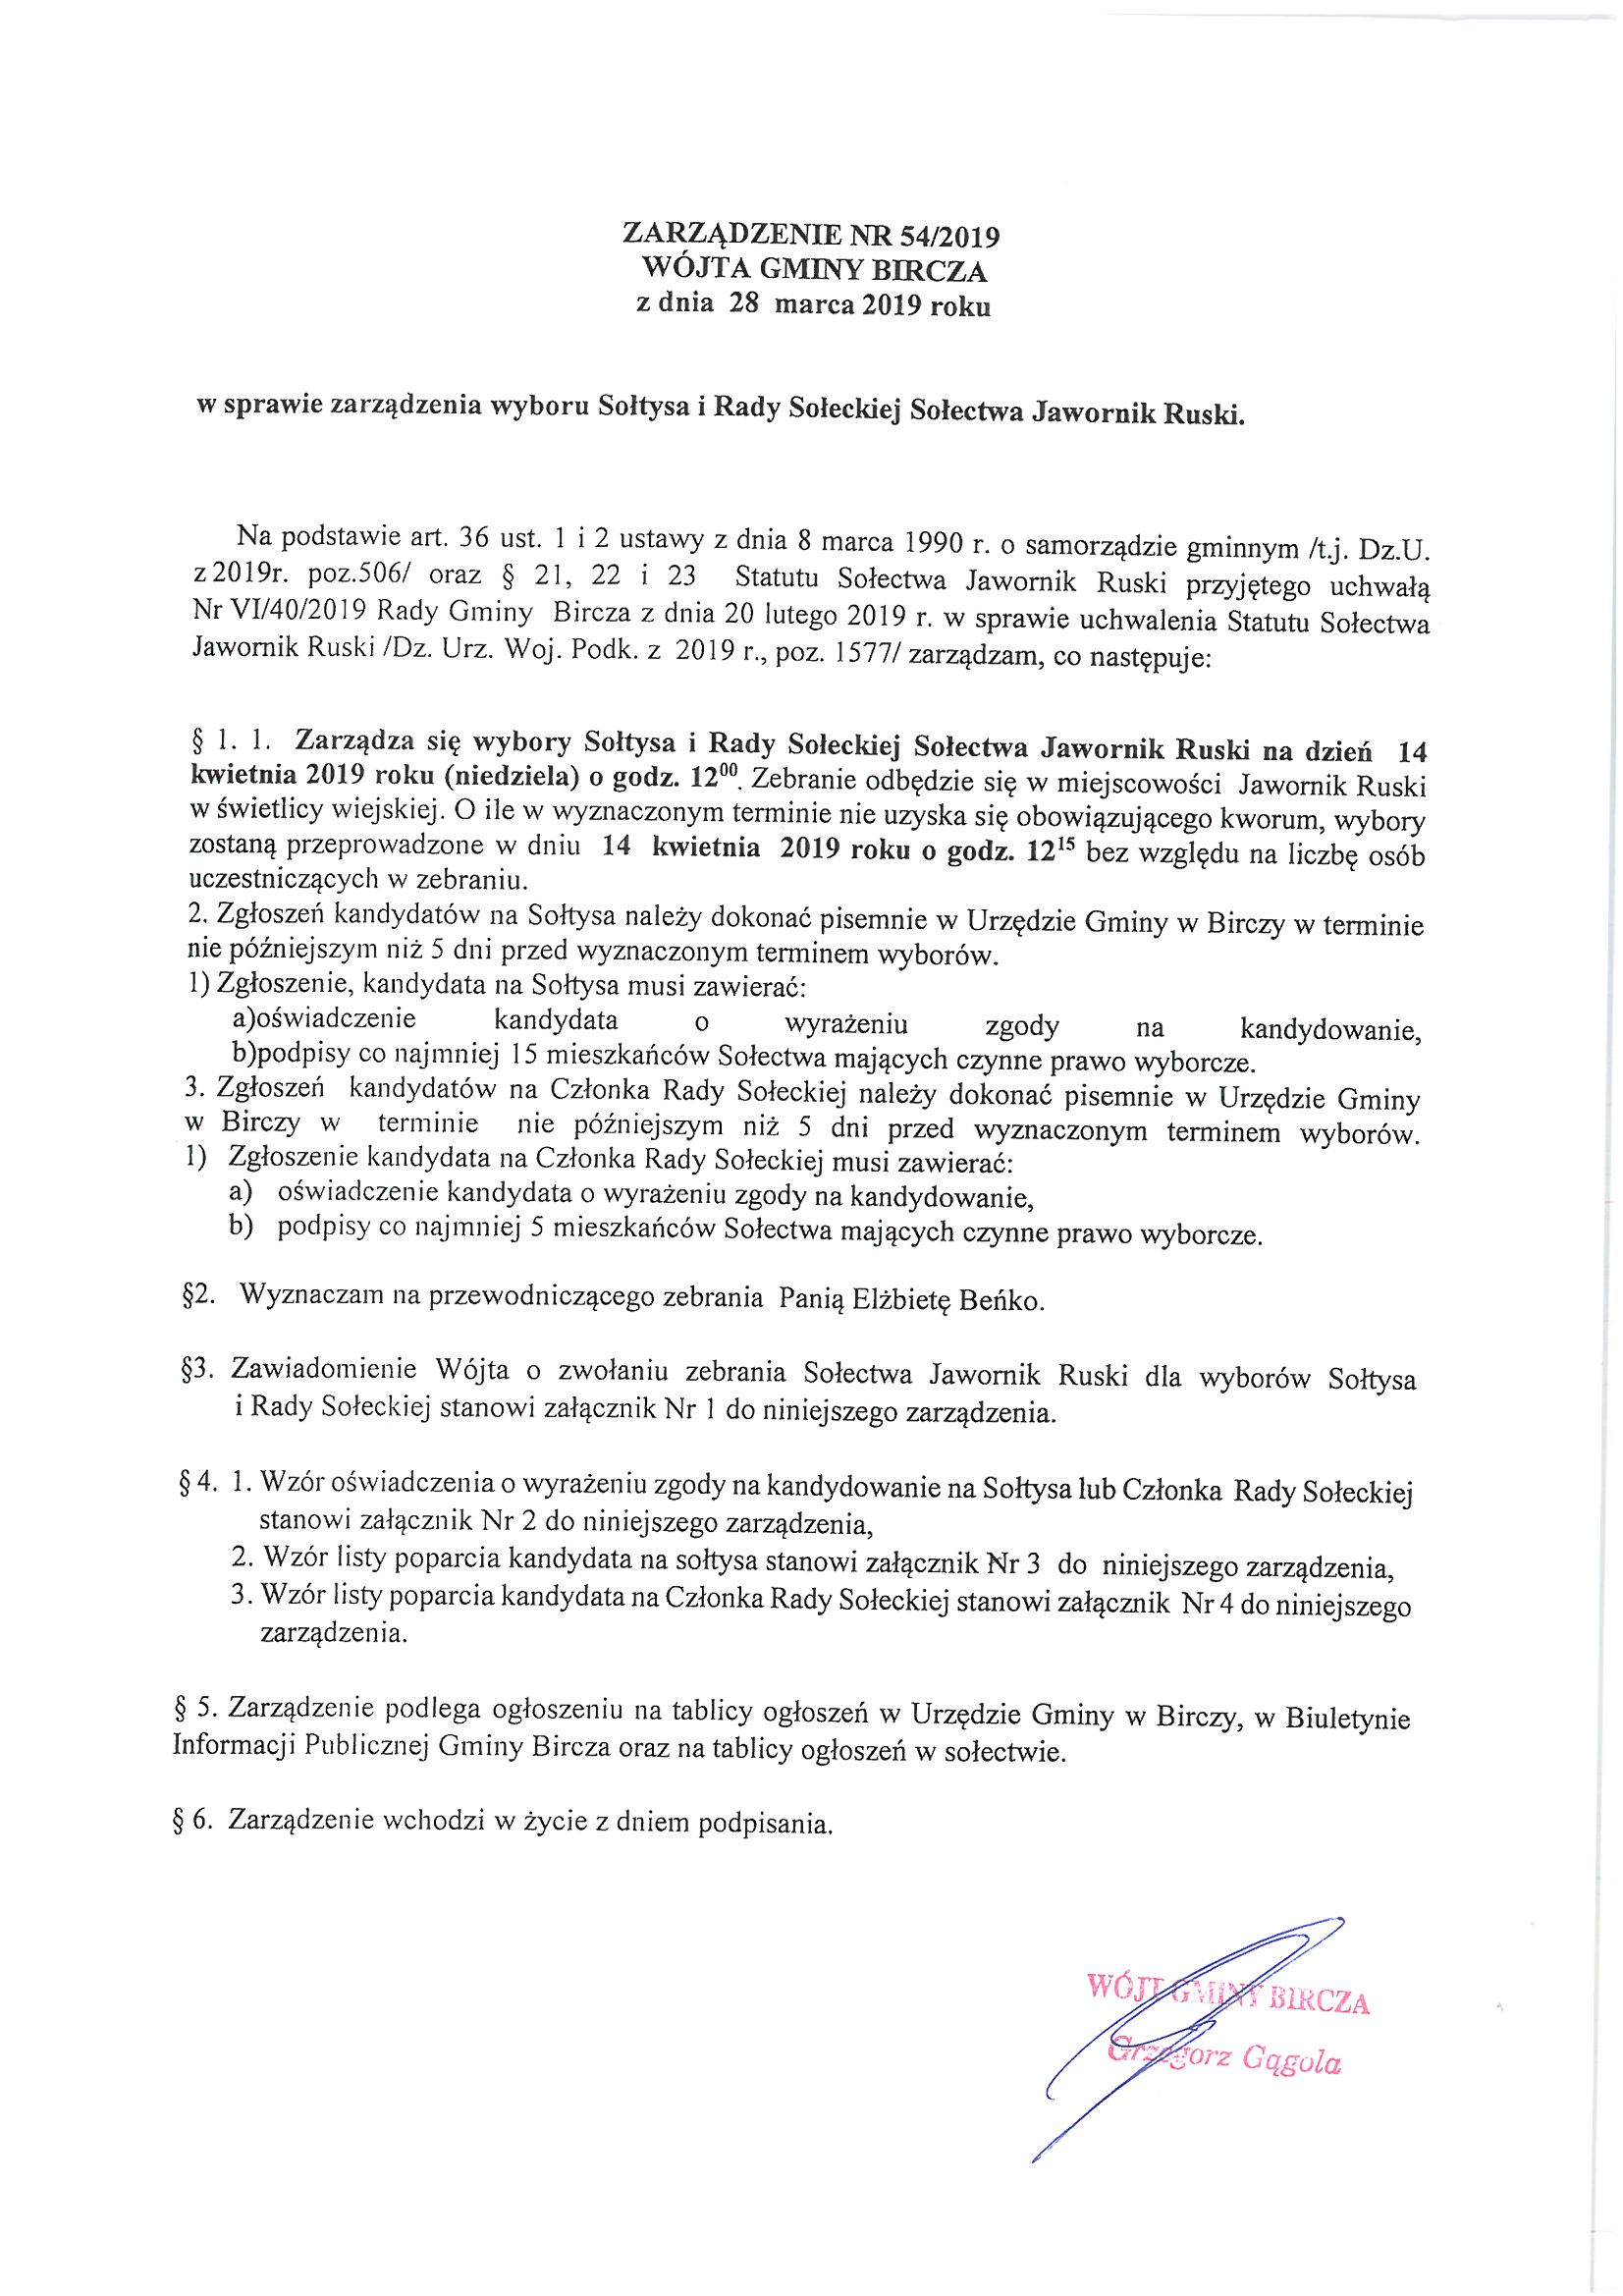 ------- Zarządzenie w sprawie wyboru Sołtysa i Rady Sołeckiej Jawornik Ruski.jpg